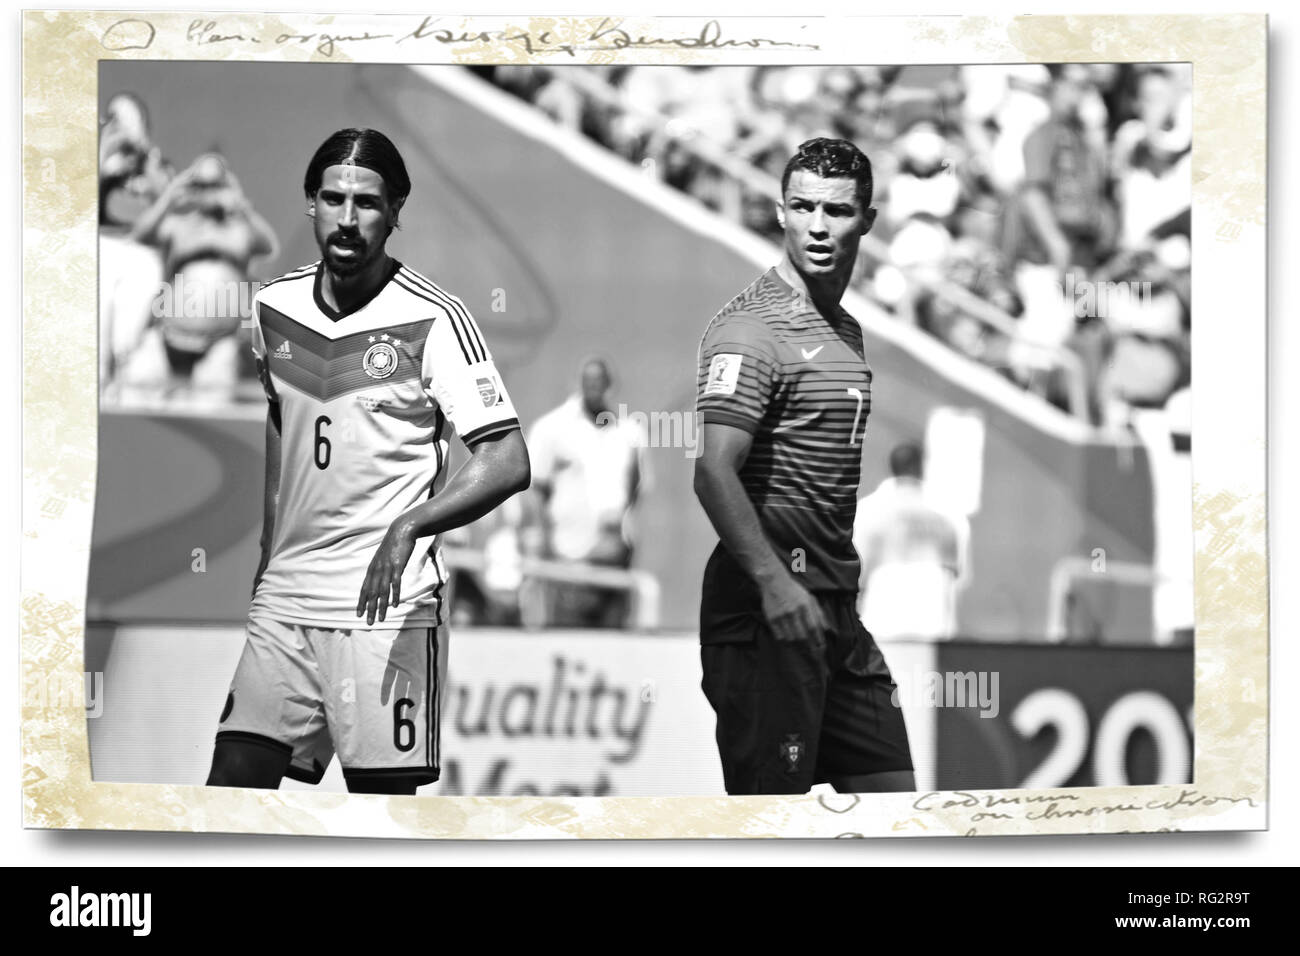 Khedira & Ronaldo, la Fifa World Cup 2014, Salvador da Bahia, Brésil, l'Allemagne contre le Portugal Banque D'Images